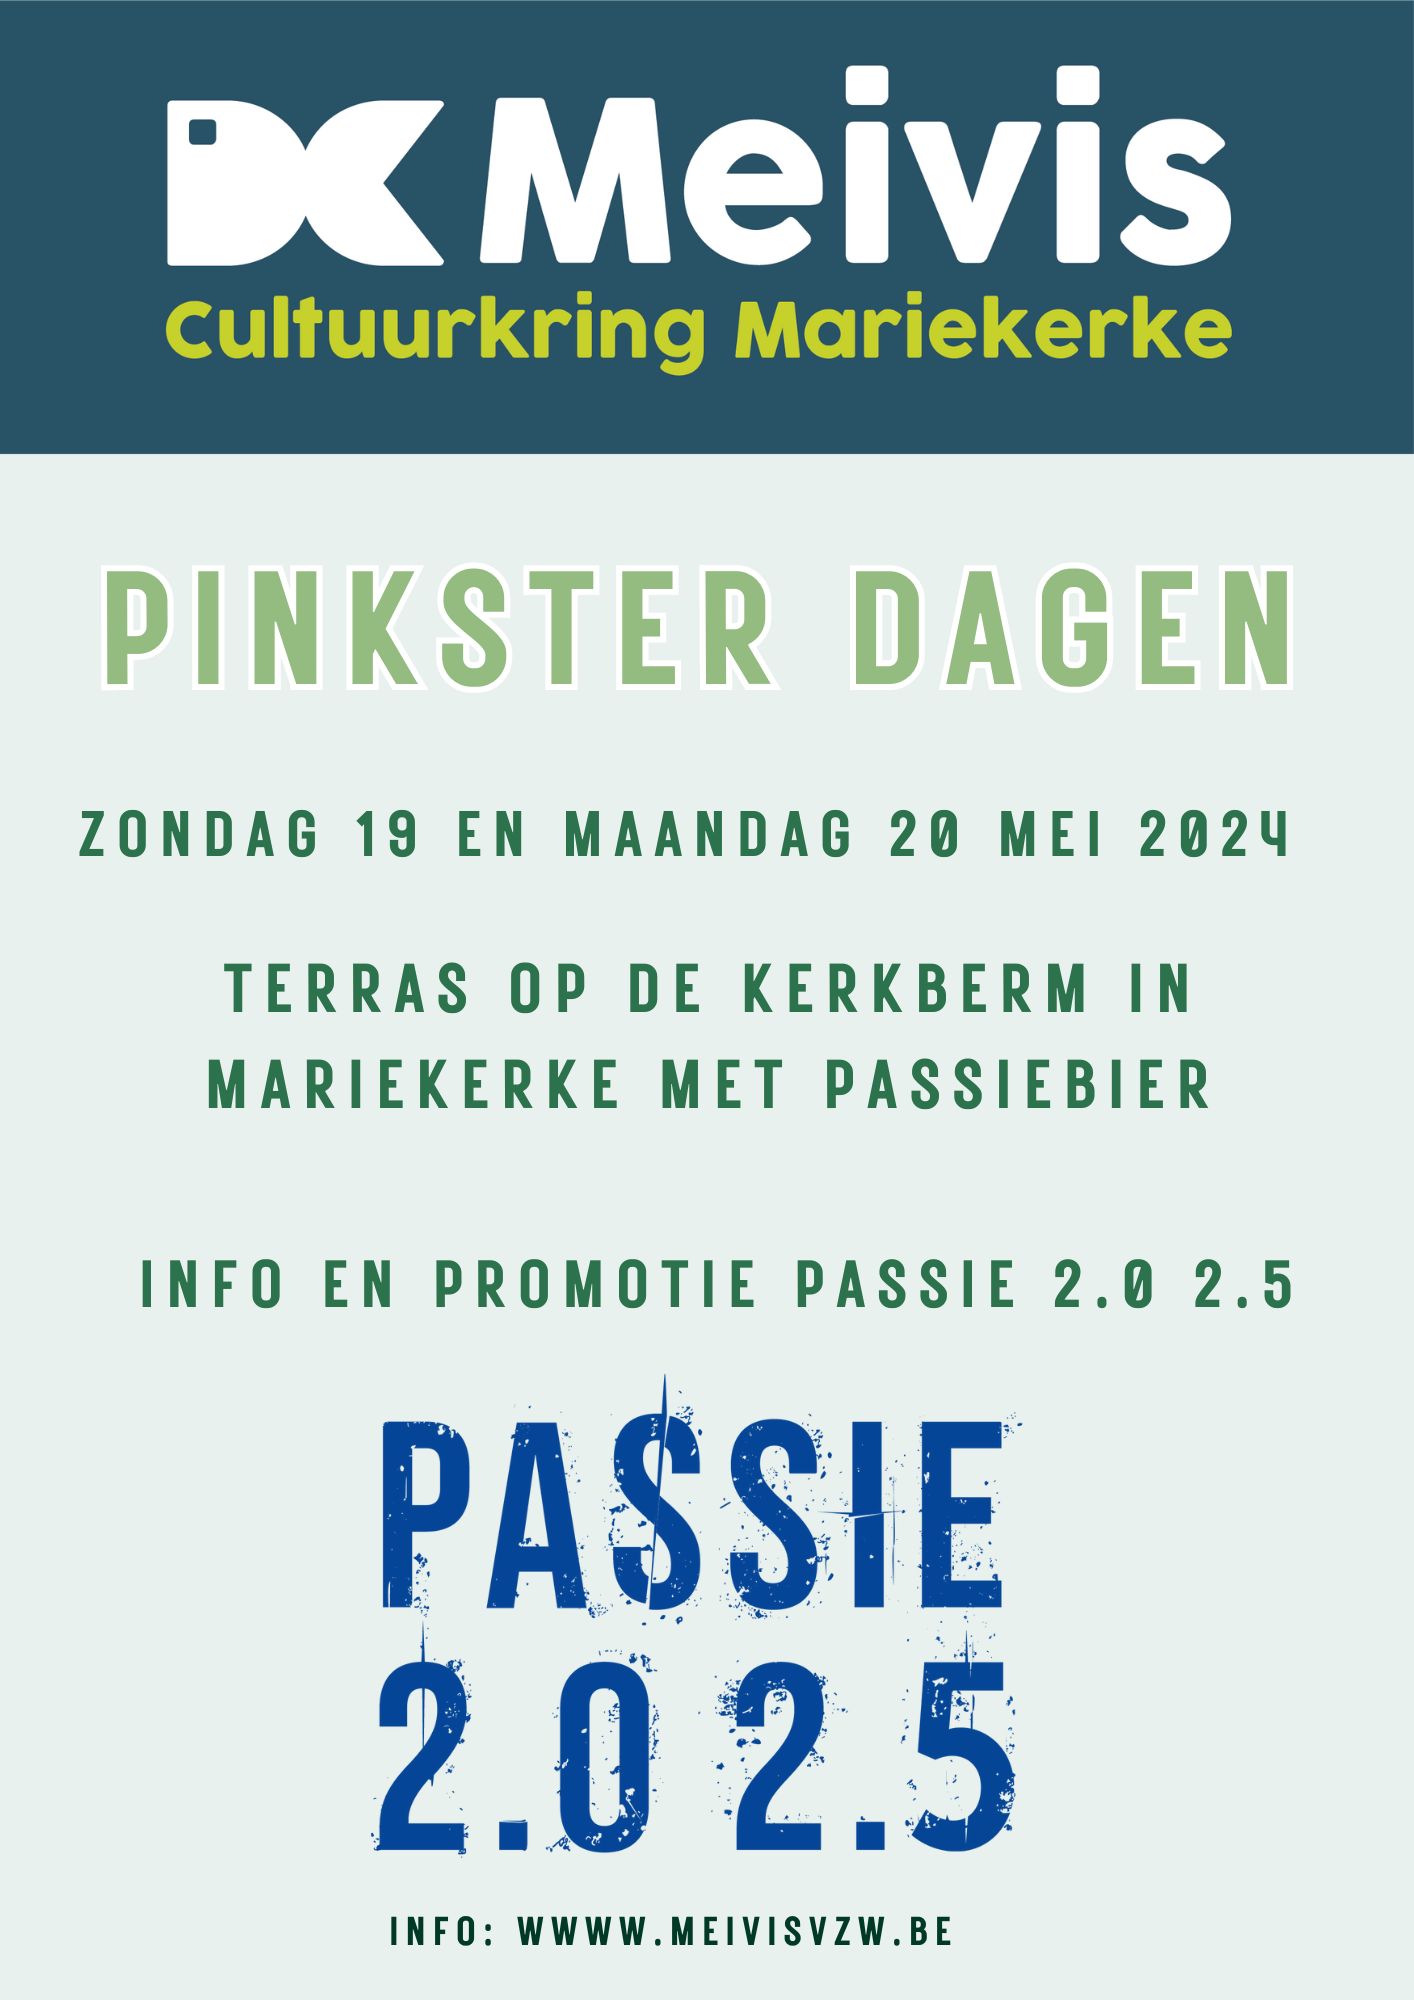 Pinsterdagen Info en promotie  Passie 2.0 2.5  | Terras met passiebier op kerkberm Mariekerke